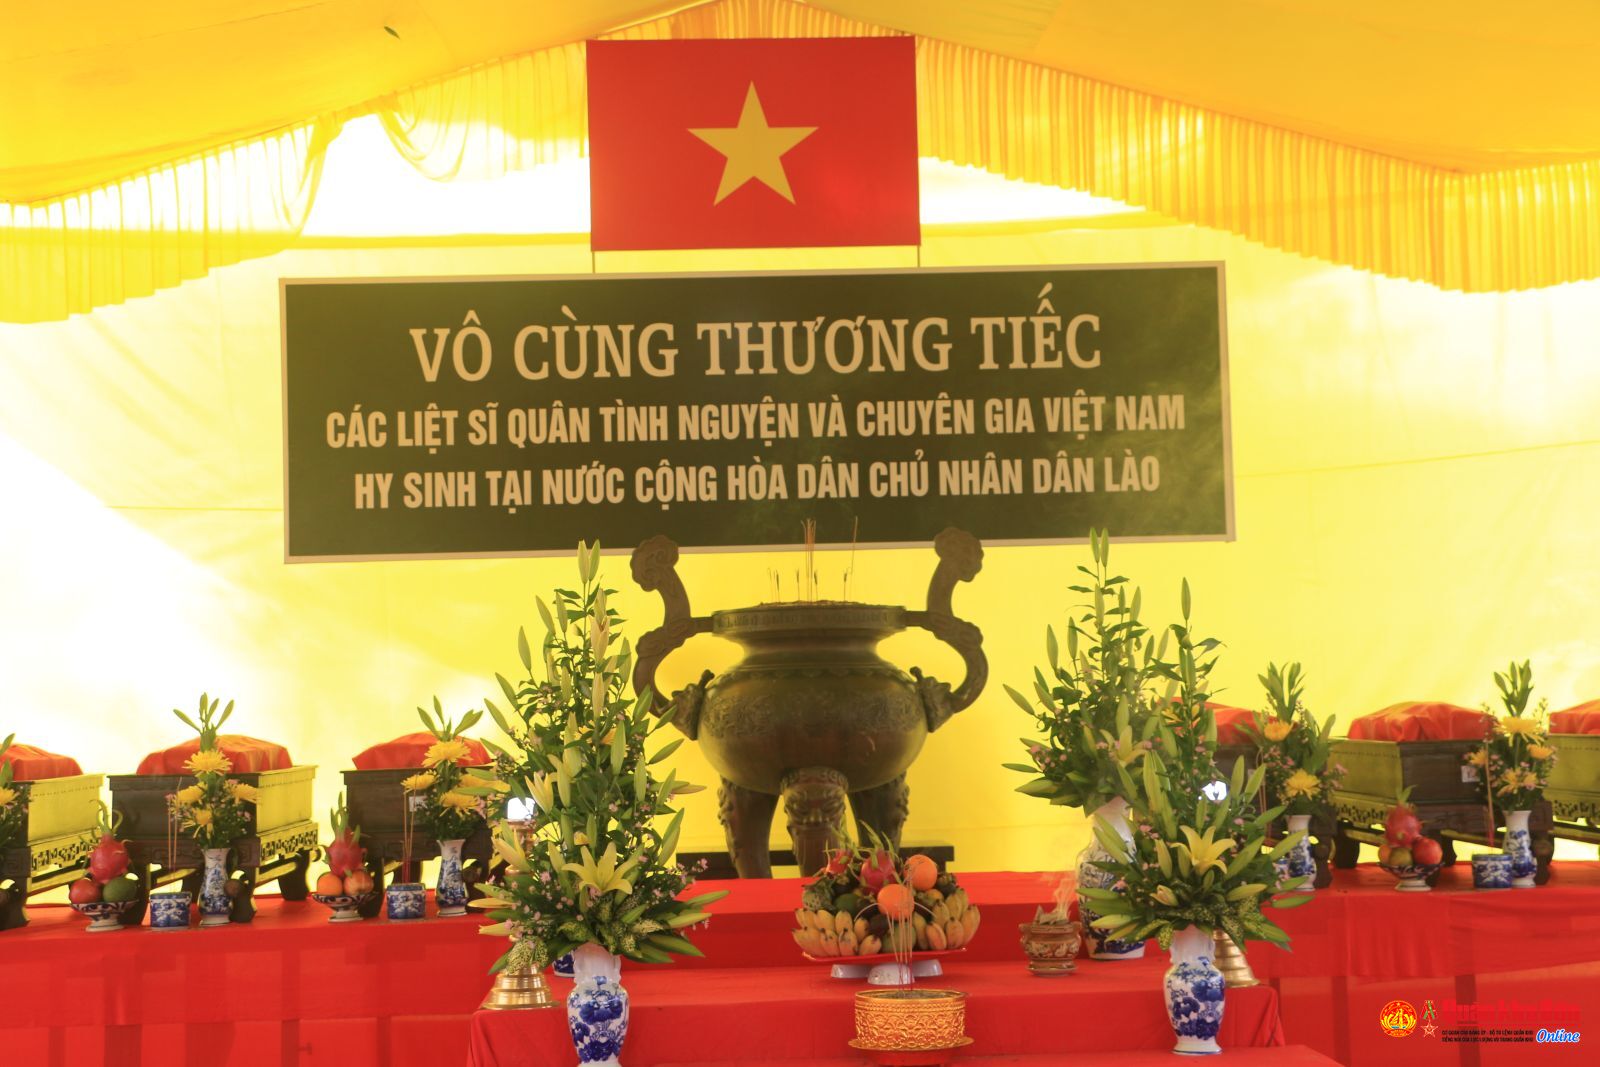 Tỉnh Thừa Thiên Huế: Trang trọng tổ chức Lễ truy điệu và an táng 16 hài cốt liệt sĩ